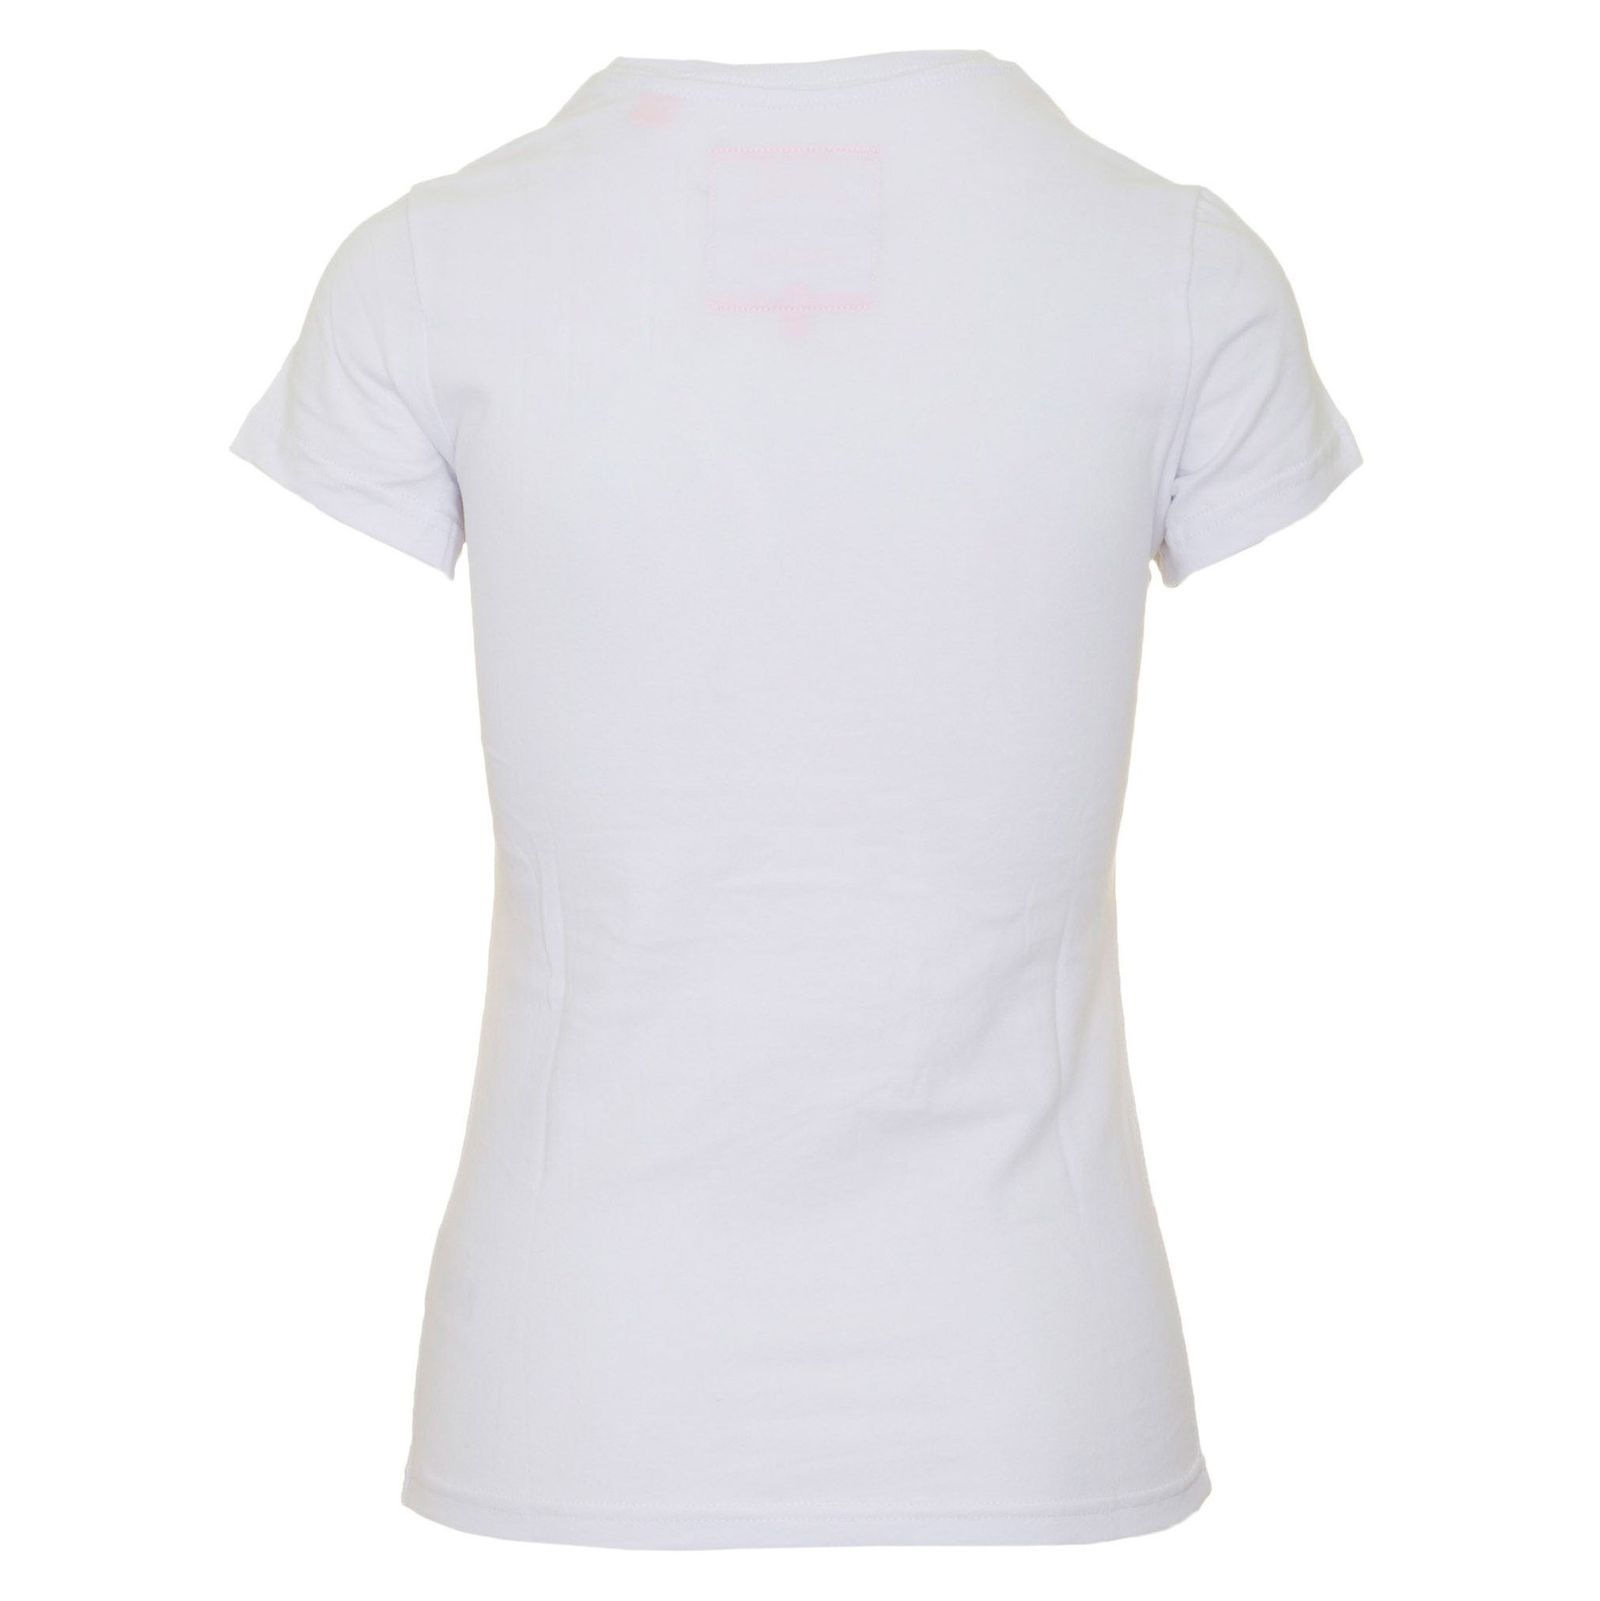 تی شرت یقه گرد زنانه - سوپردرای - سفيد - 3